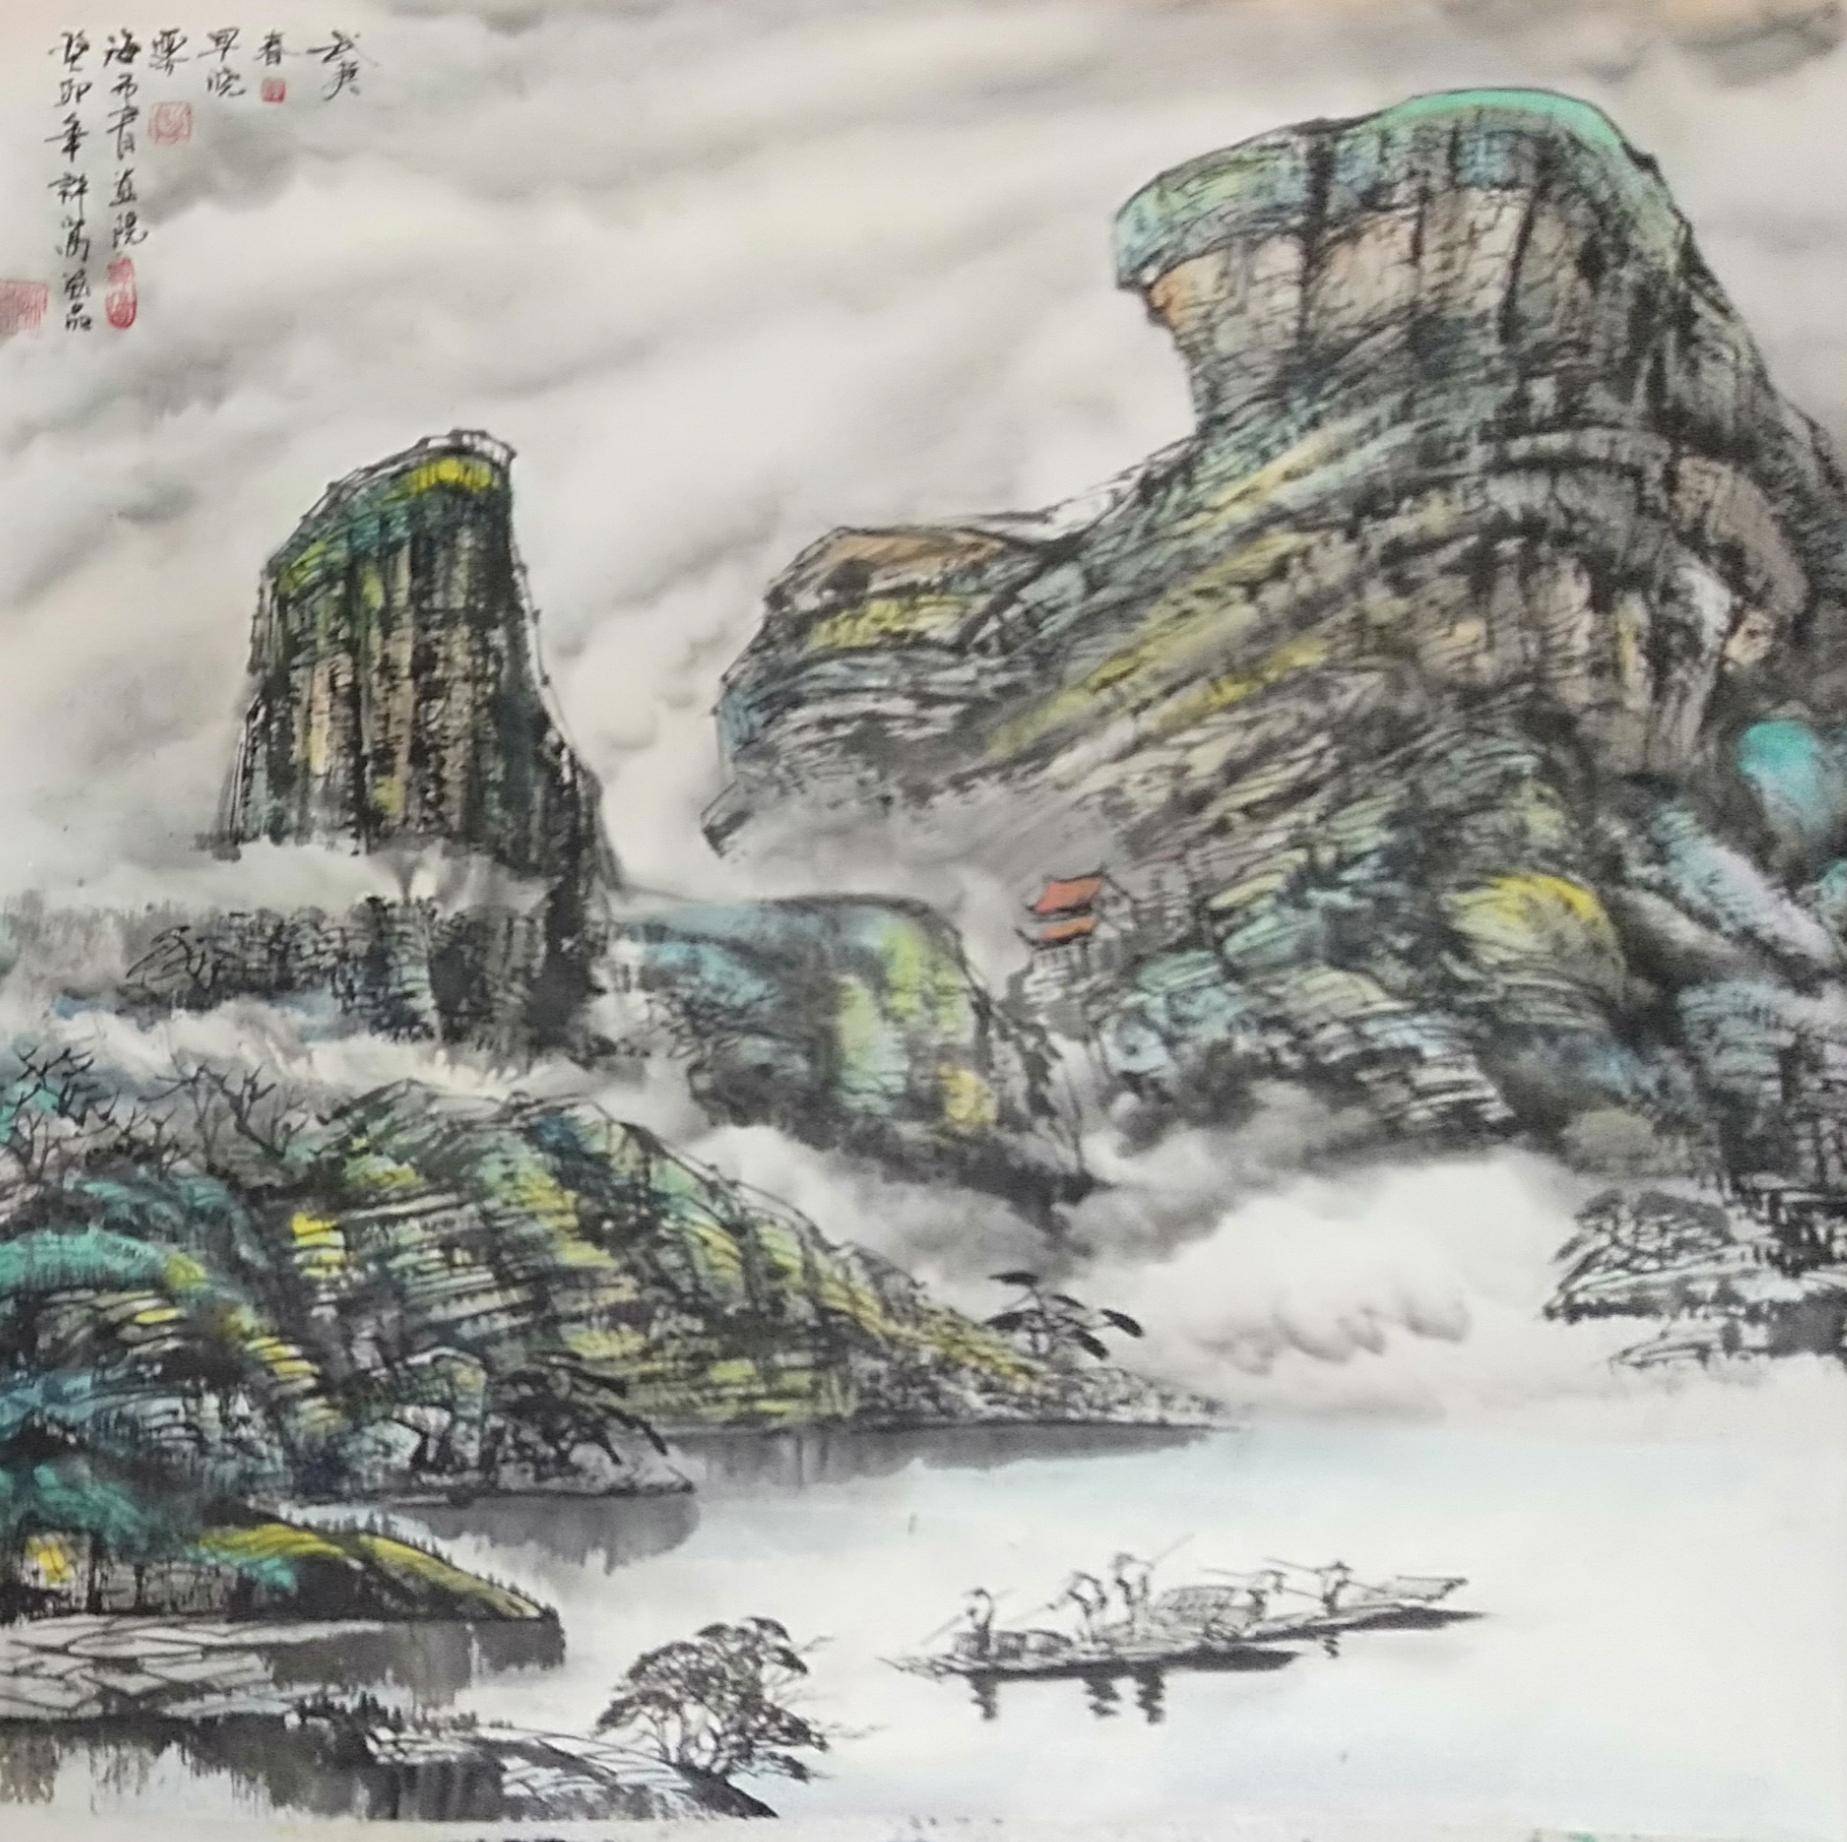 中国武夷山水禅画第一人—许嵩